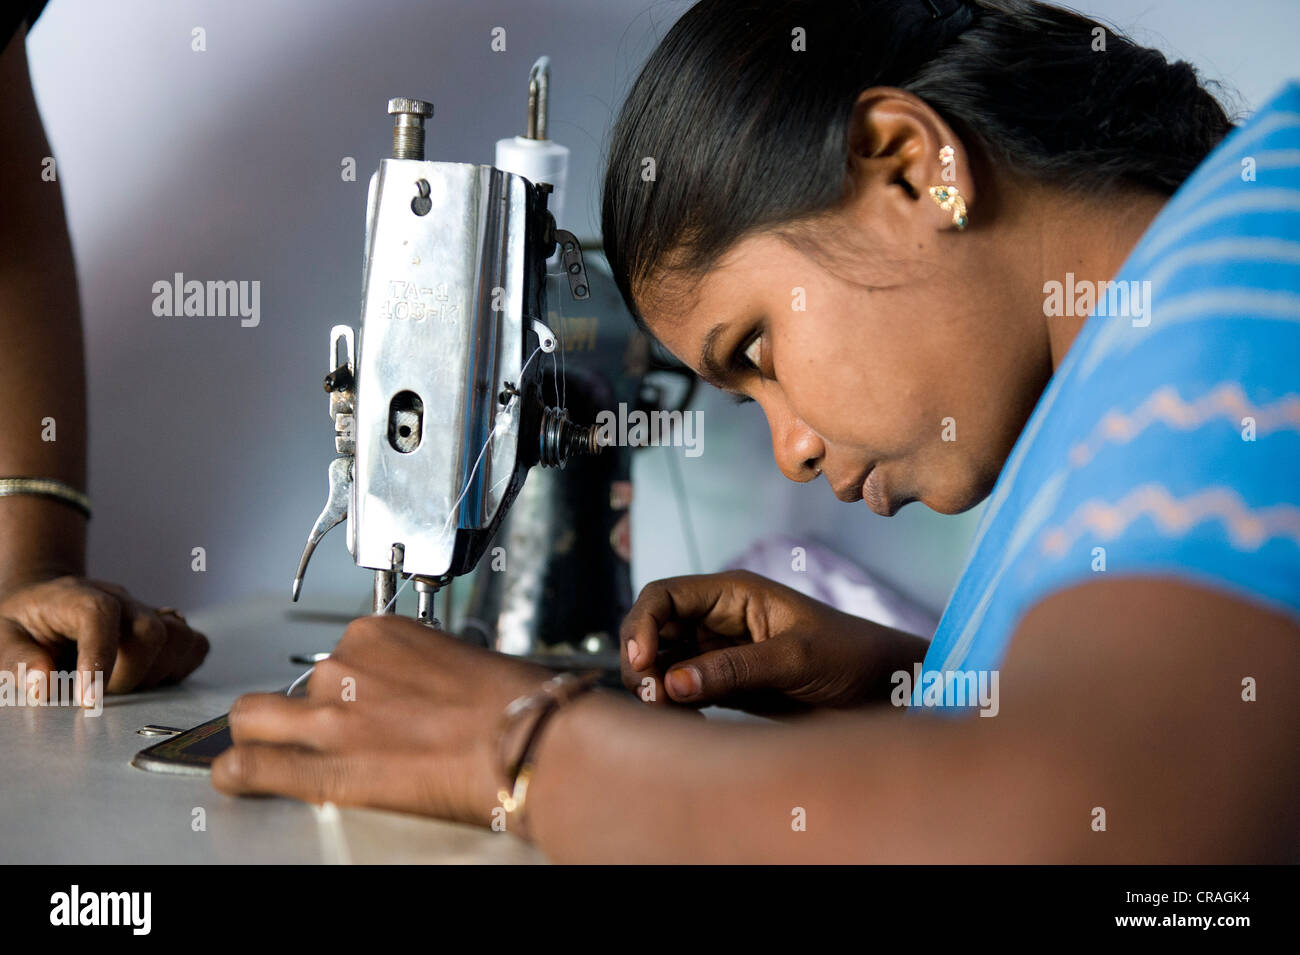 Jeune femme est enseigné la couture et la couture, la formation professionnelle et technique, Nanniyur Pudhur près de Karur, Tamil Nadu, Inde Banque D'Images